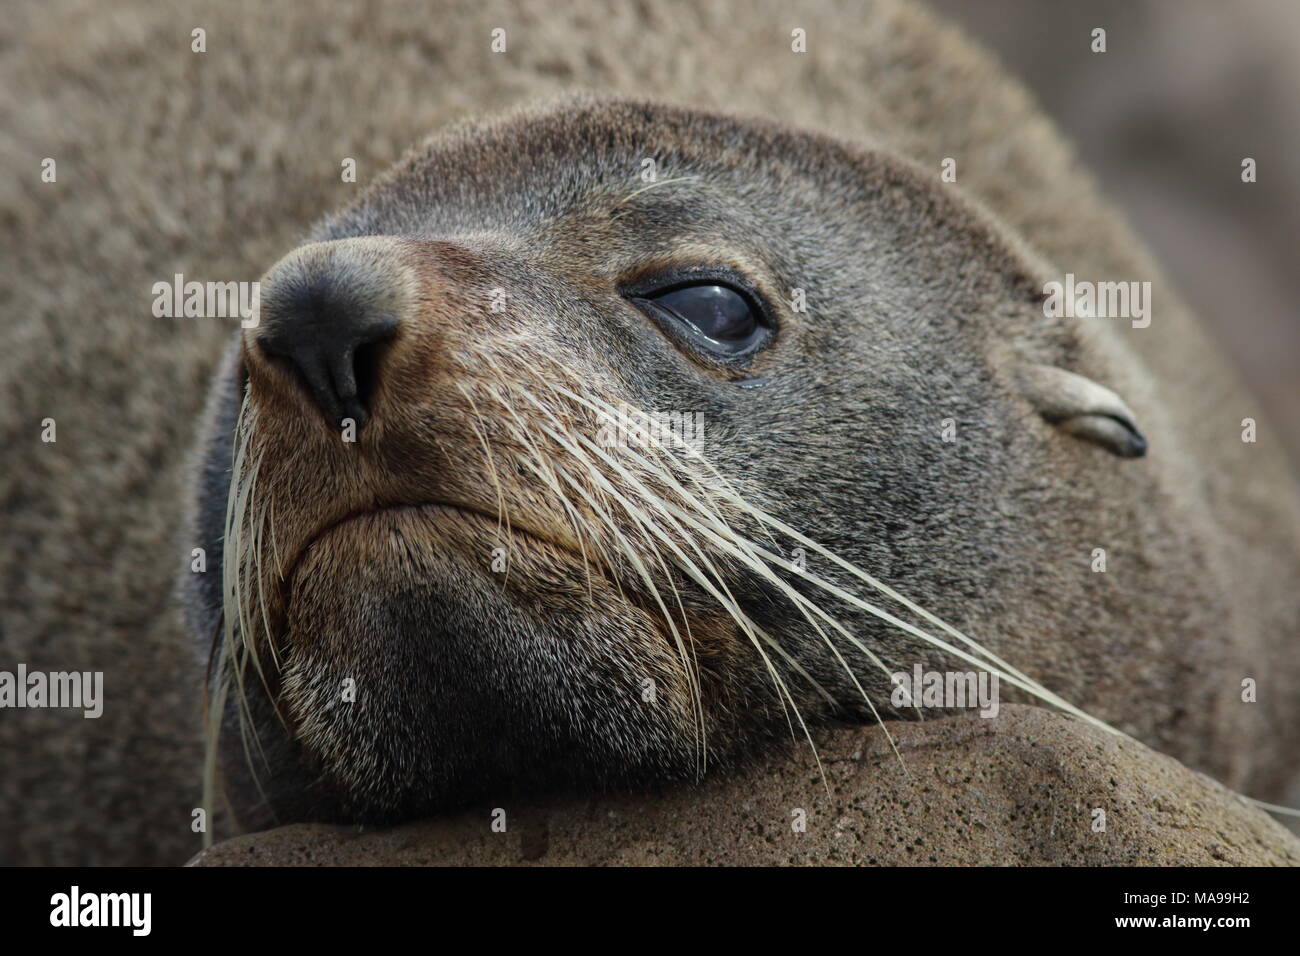 Arctocephalus forsteri, Kekerno und New Zealand fur Seal, das sind alles Namen für dieses seelöwen. Hier zeigt seine Schnurrhaare und der Seite des Gesichts, plus das Ohr Stockfoto